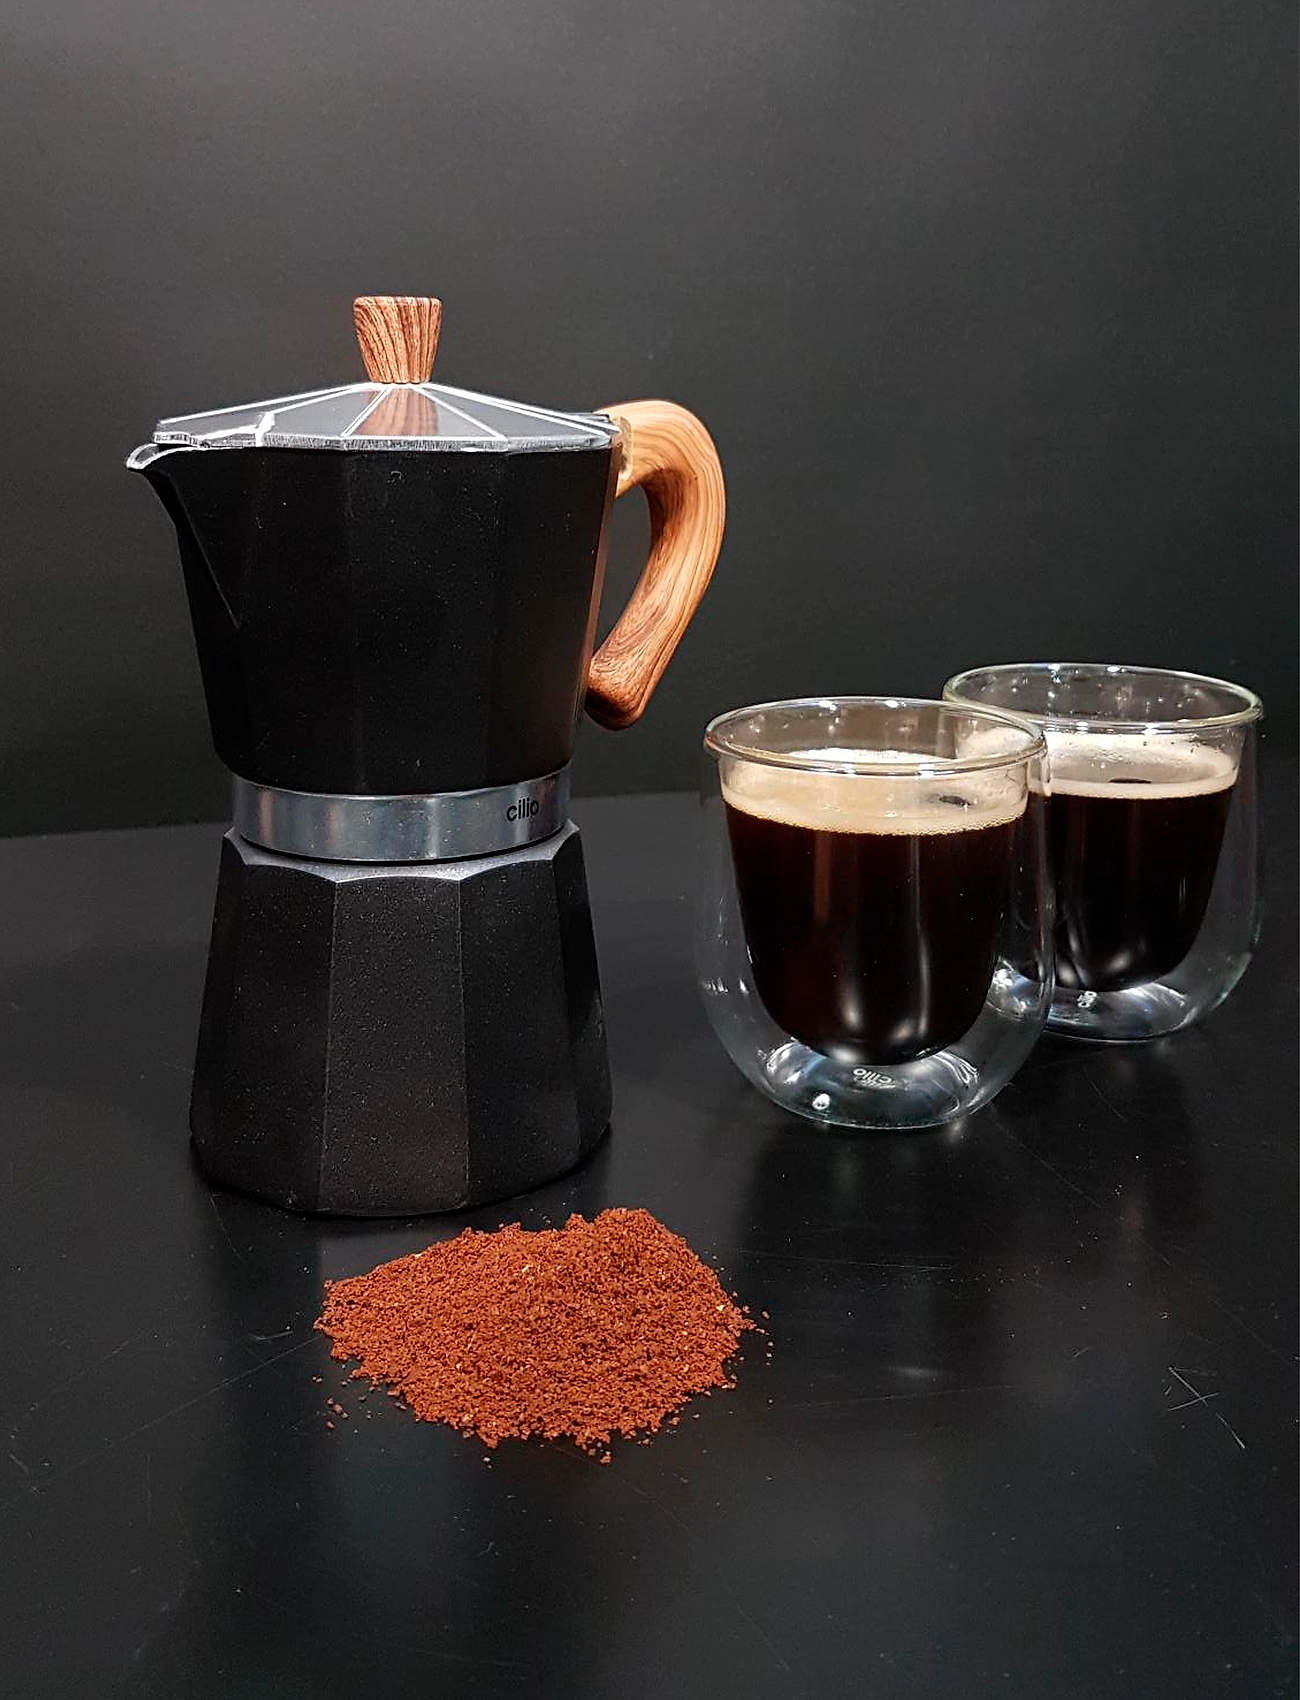 cilio - Espresso maker CLASSICO NATURA 3 cups - moka kanniņas - black - 1